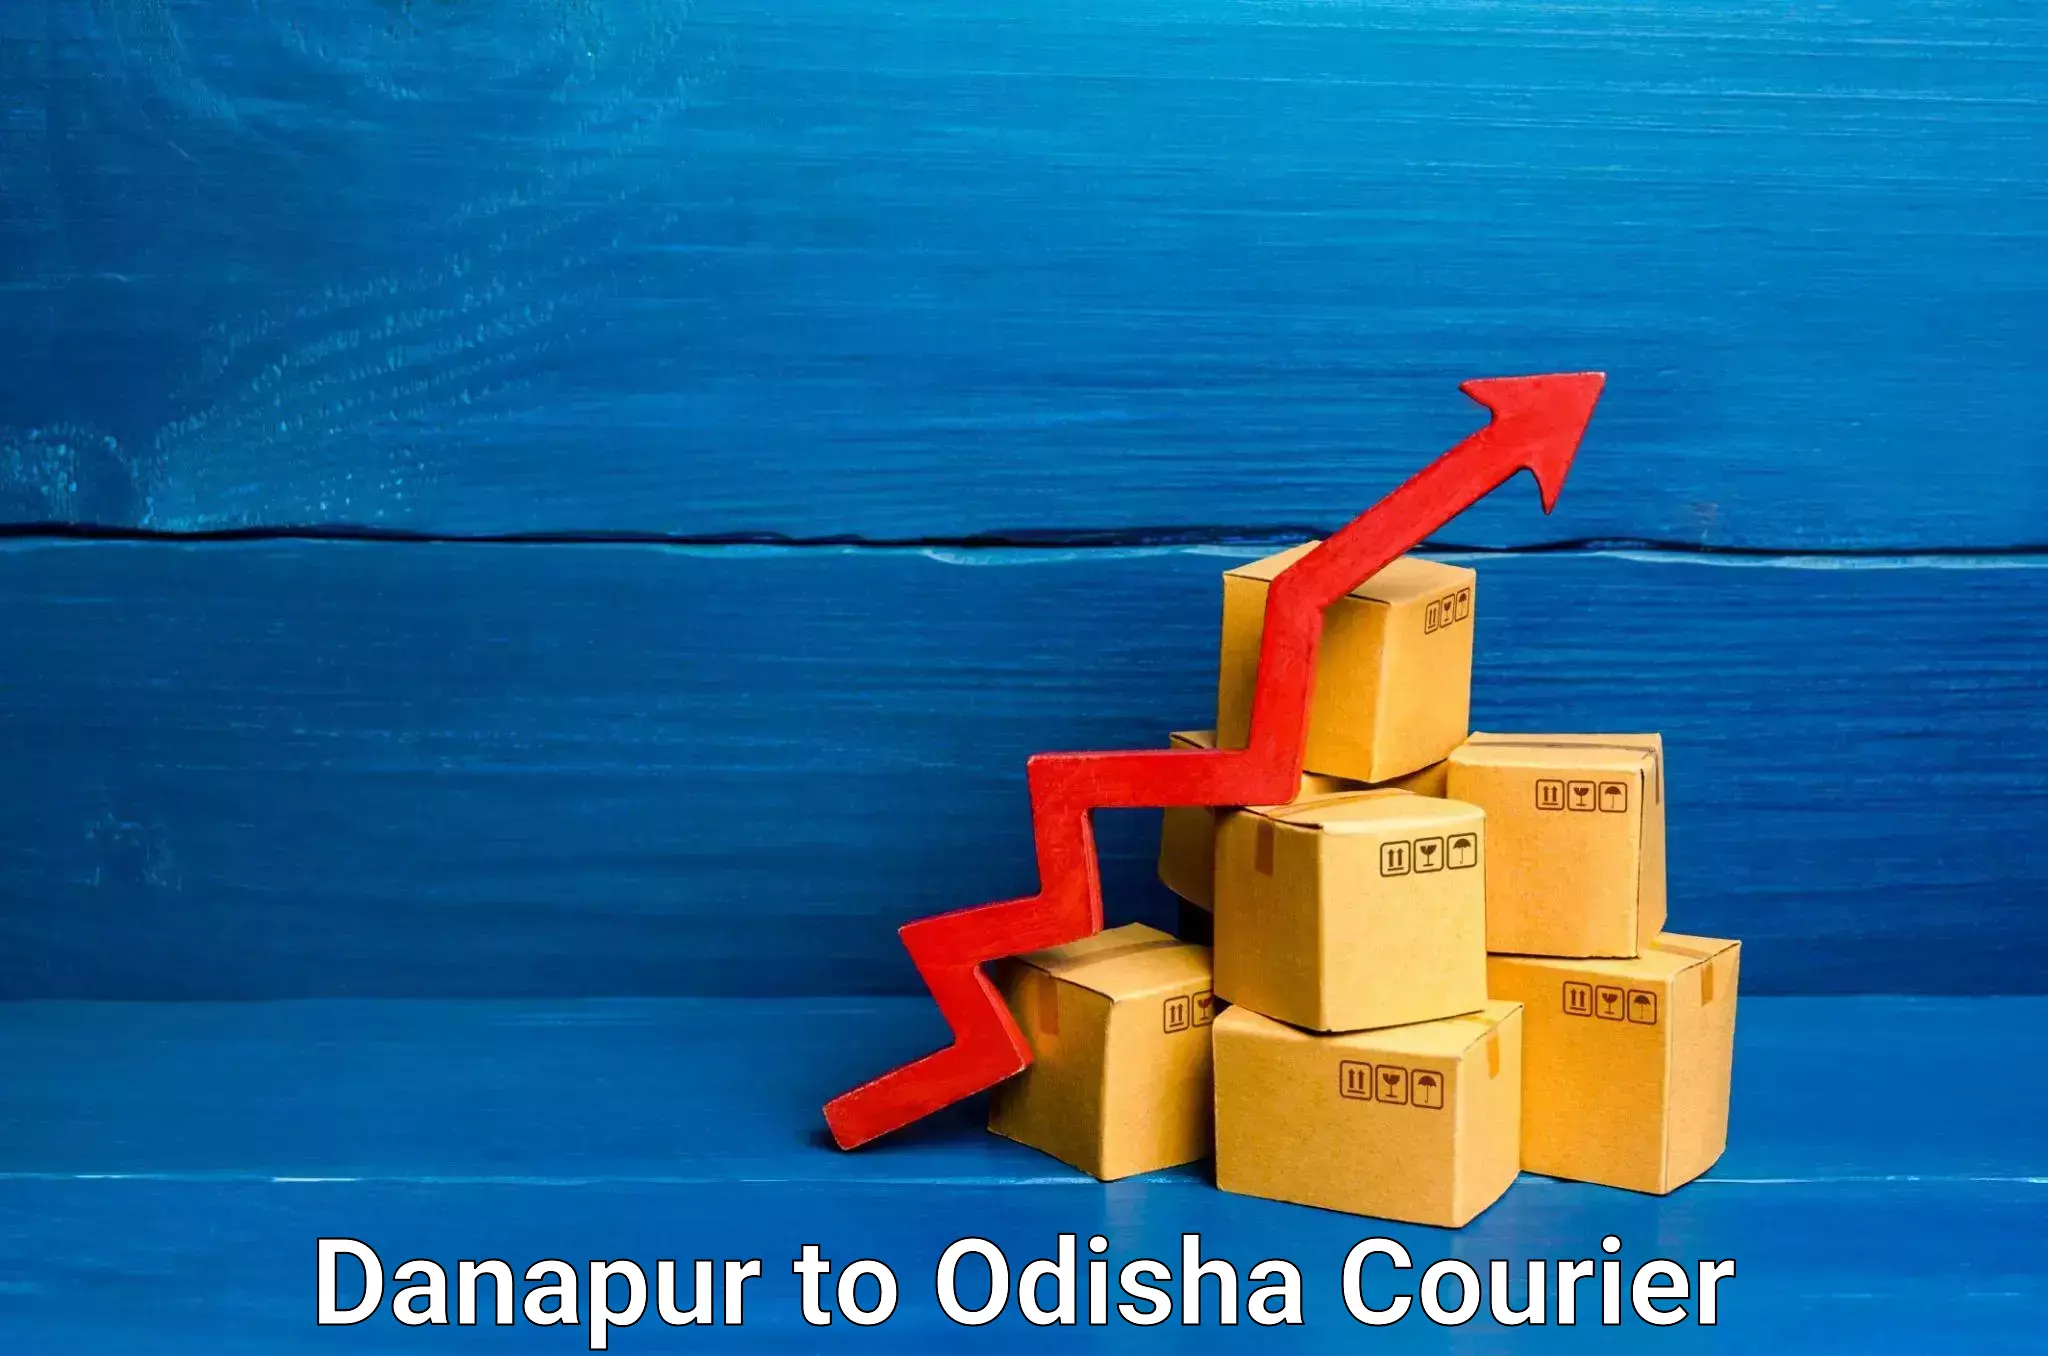 Furniture transport professionals Danapur to Puri